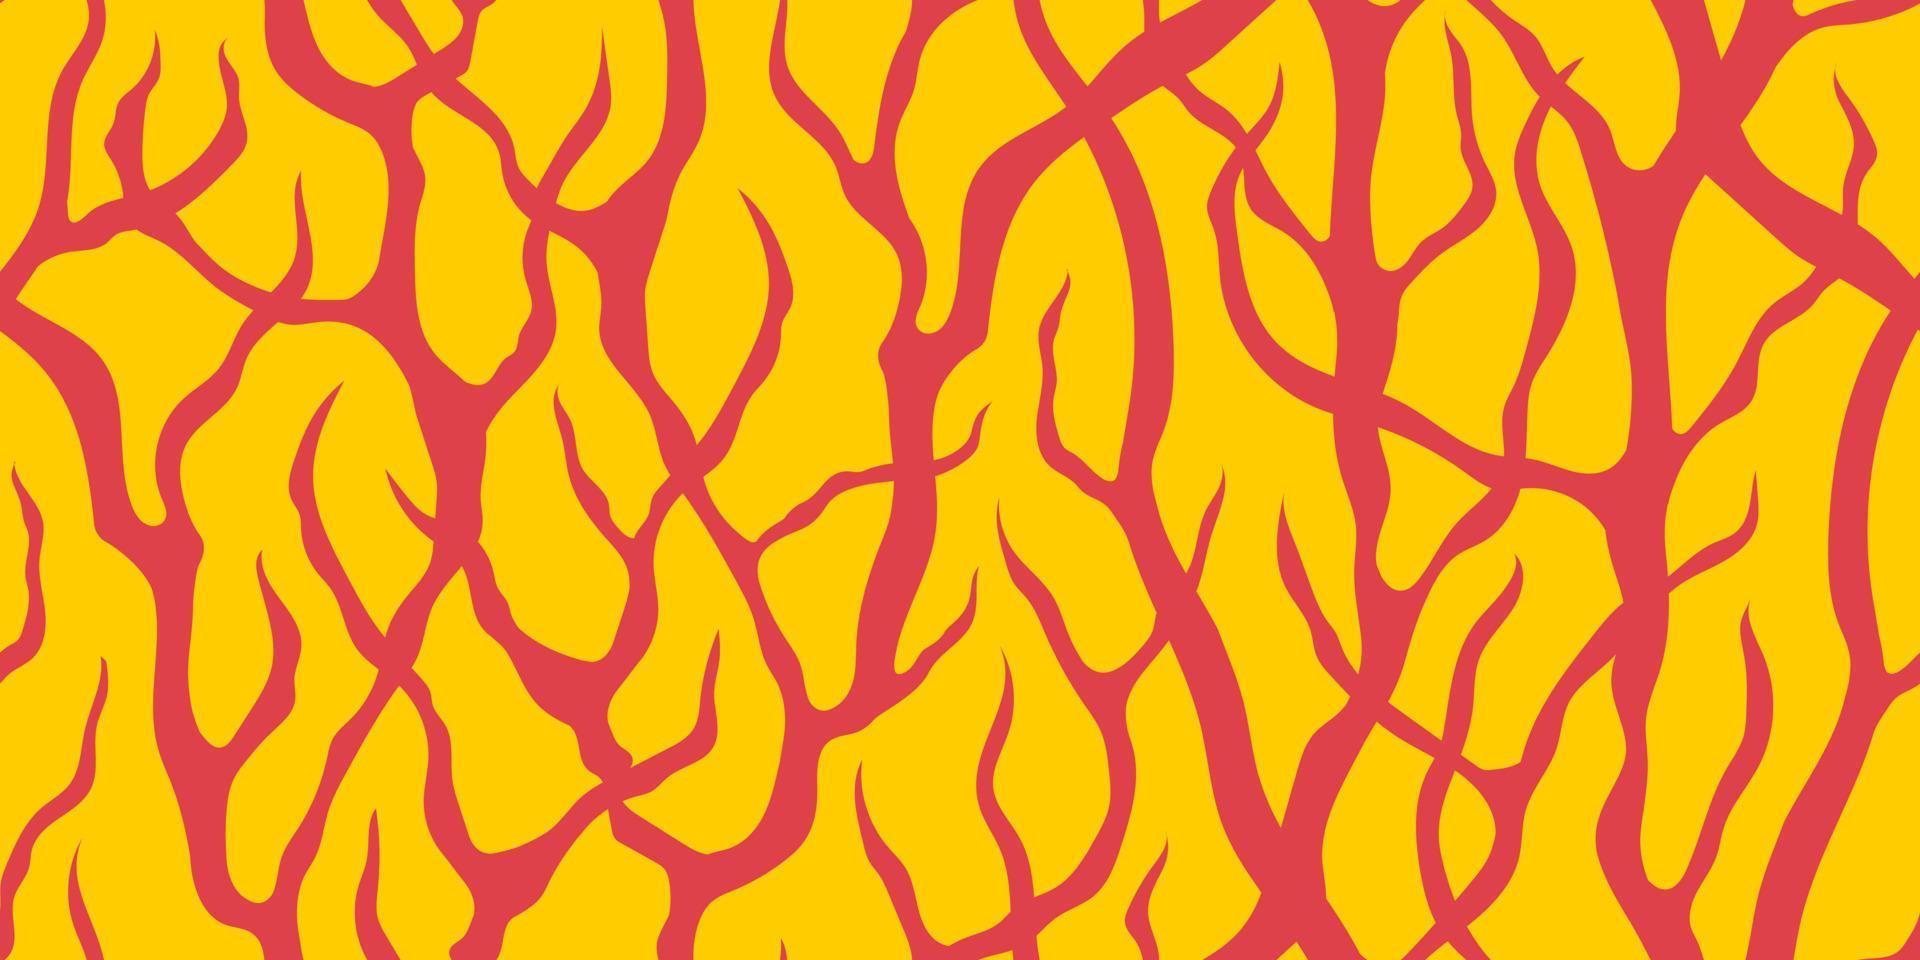 abstracte vector naadloze gele banner met roze struikgewas van boomtakken